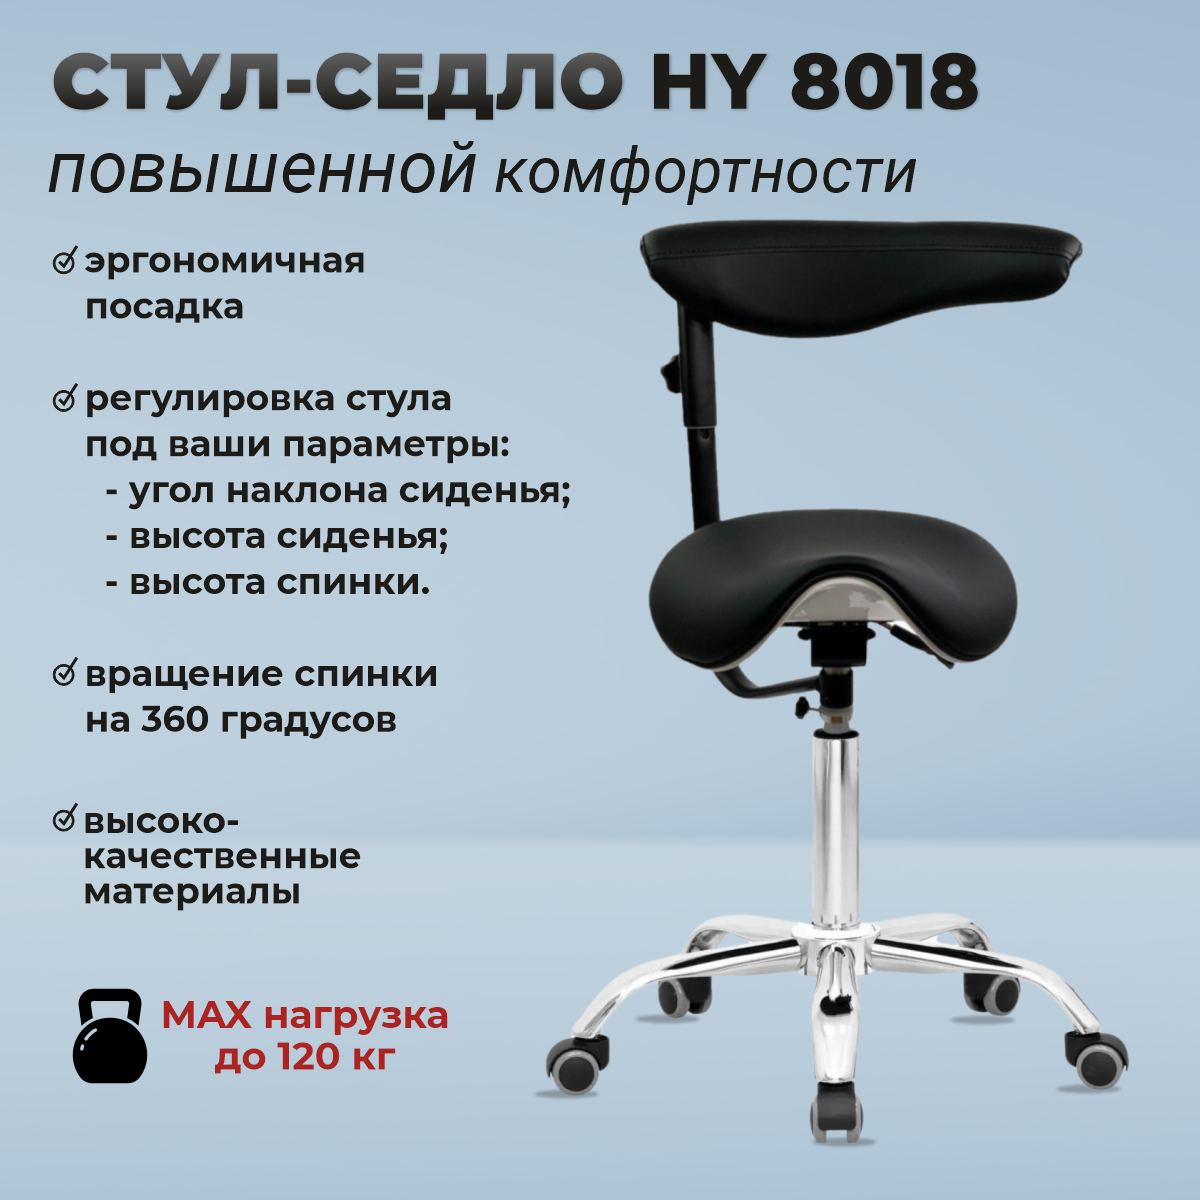 OKIRO / Стул-седло ортопедический на колесах со спинкой HY 8018 черный / стул для парикмахера, косметолога